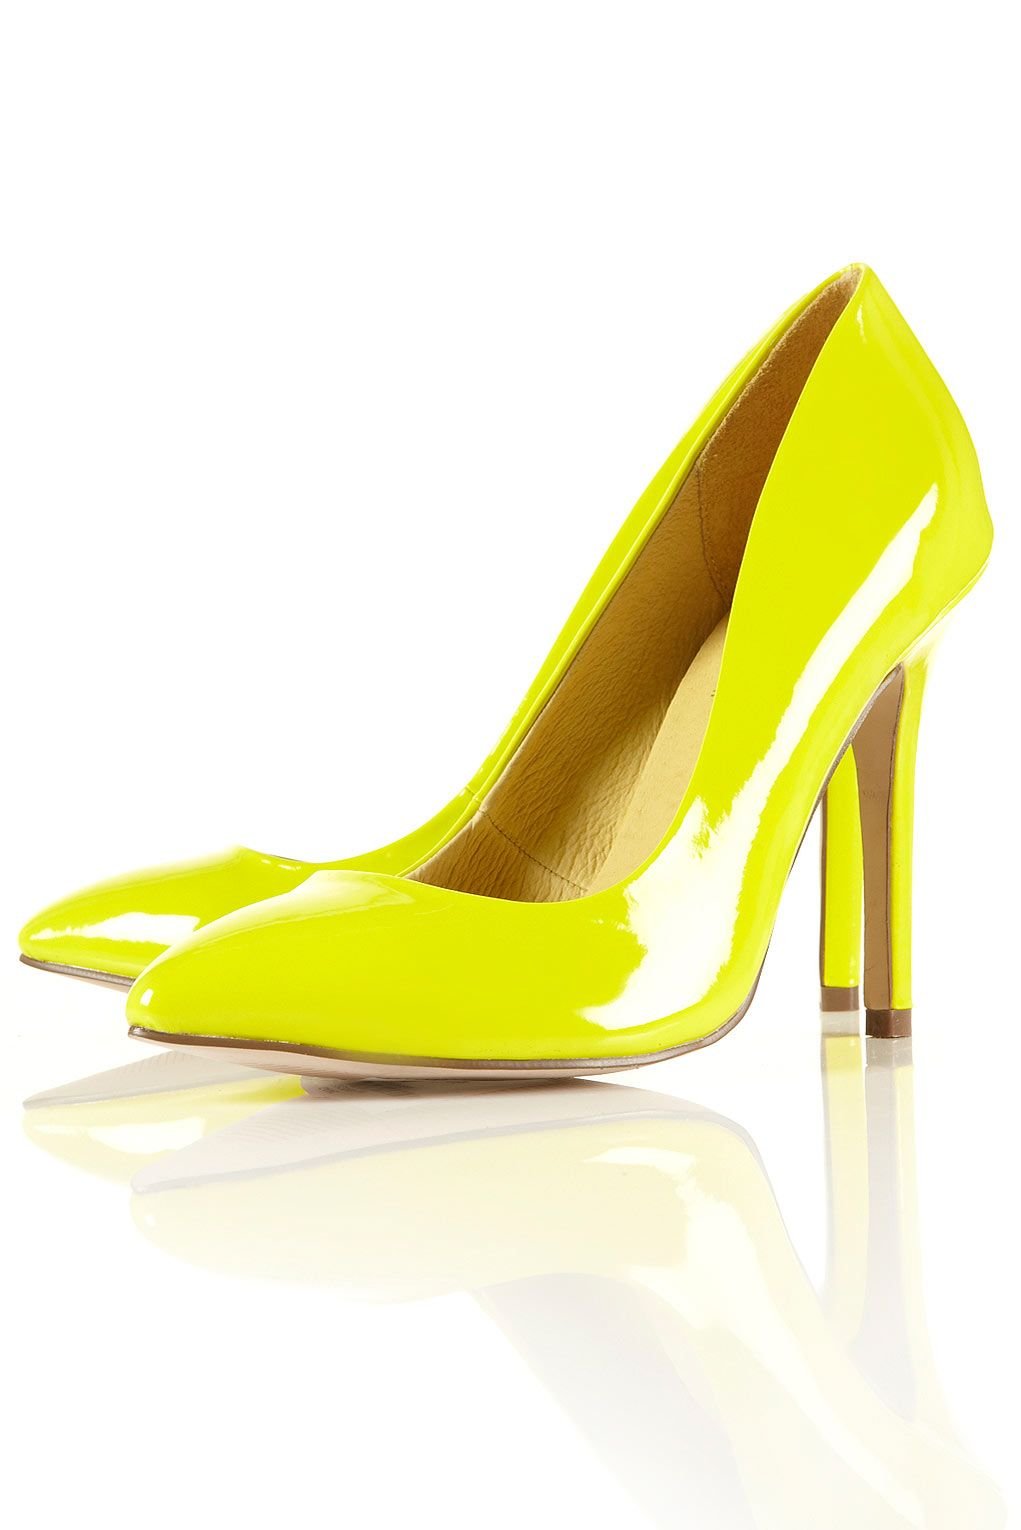 Туфли желтые купить. Aldo 2020 желтые туфли велюр. Aldo туфли неоновый желтый. Желтые туфли хелмар. Желтые туфли Pollini.